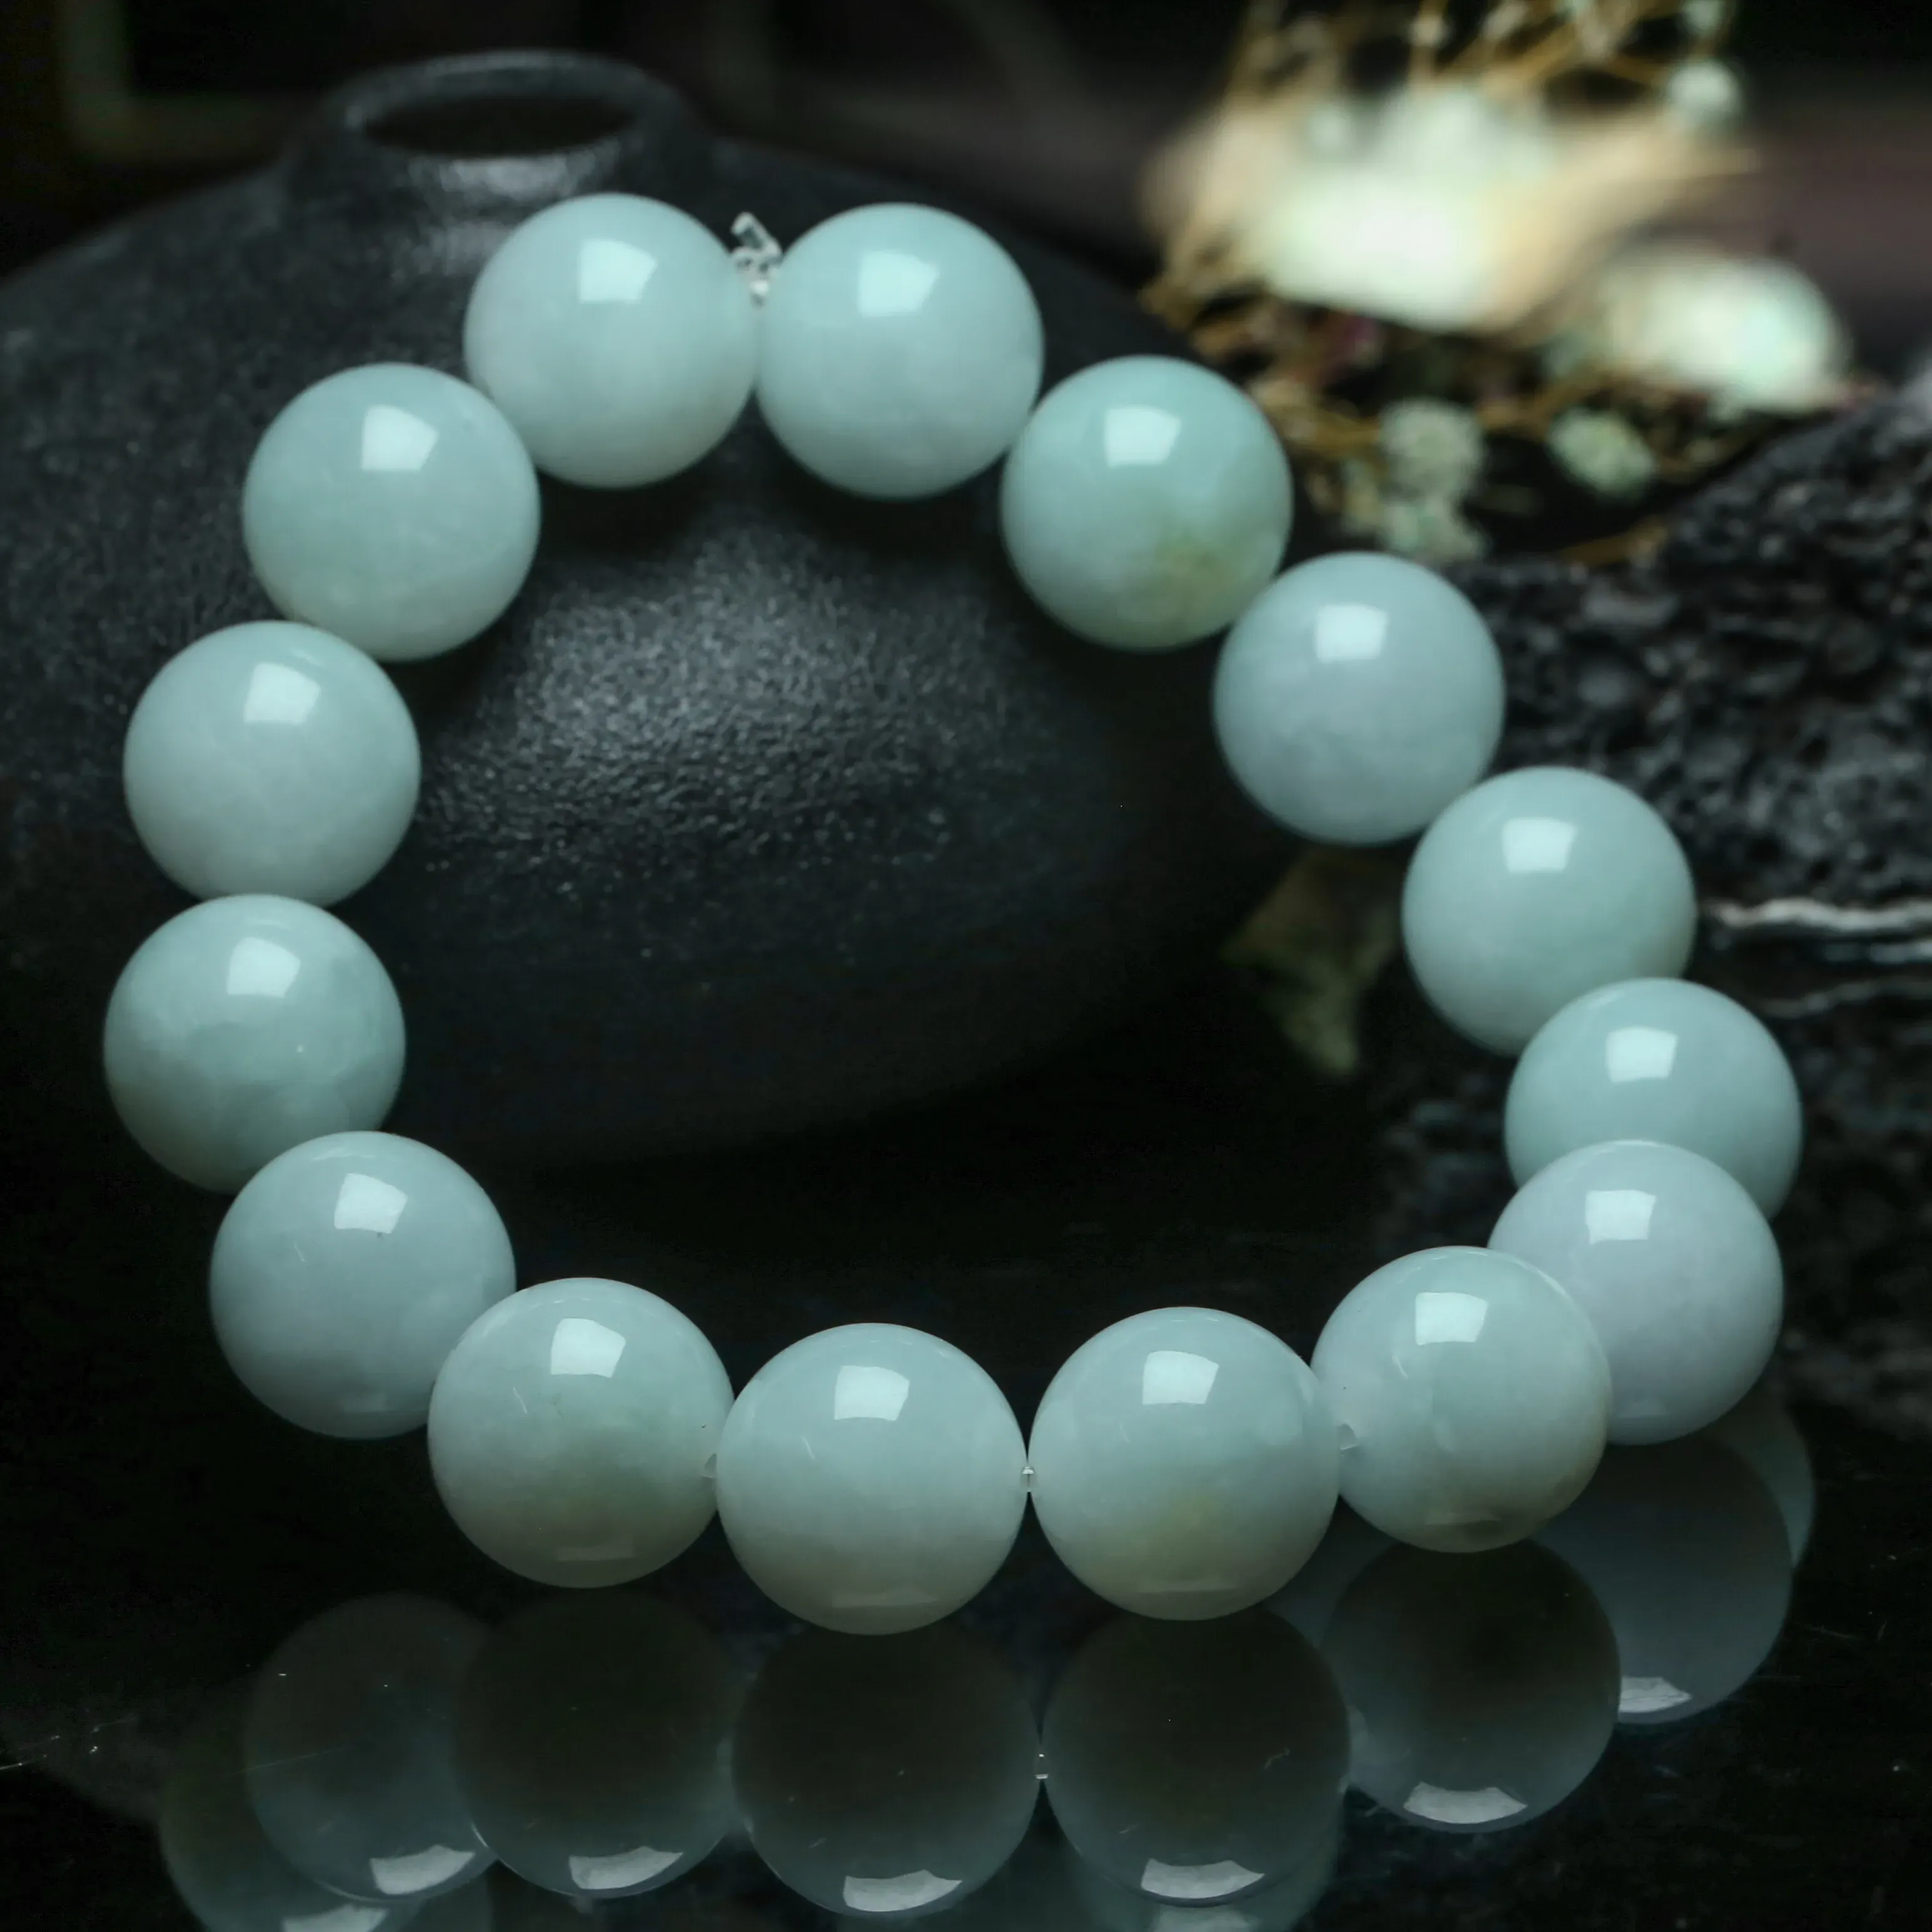 翡翠圆珠手串，共15颗珠子，取其中一颗珠尺寸大约13.88mm，亮丽秀气，圆润饱满，上手佩戴效果漂亮。